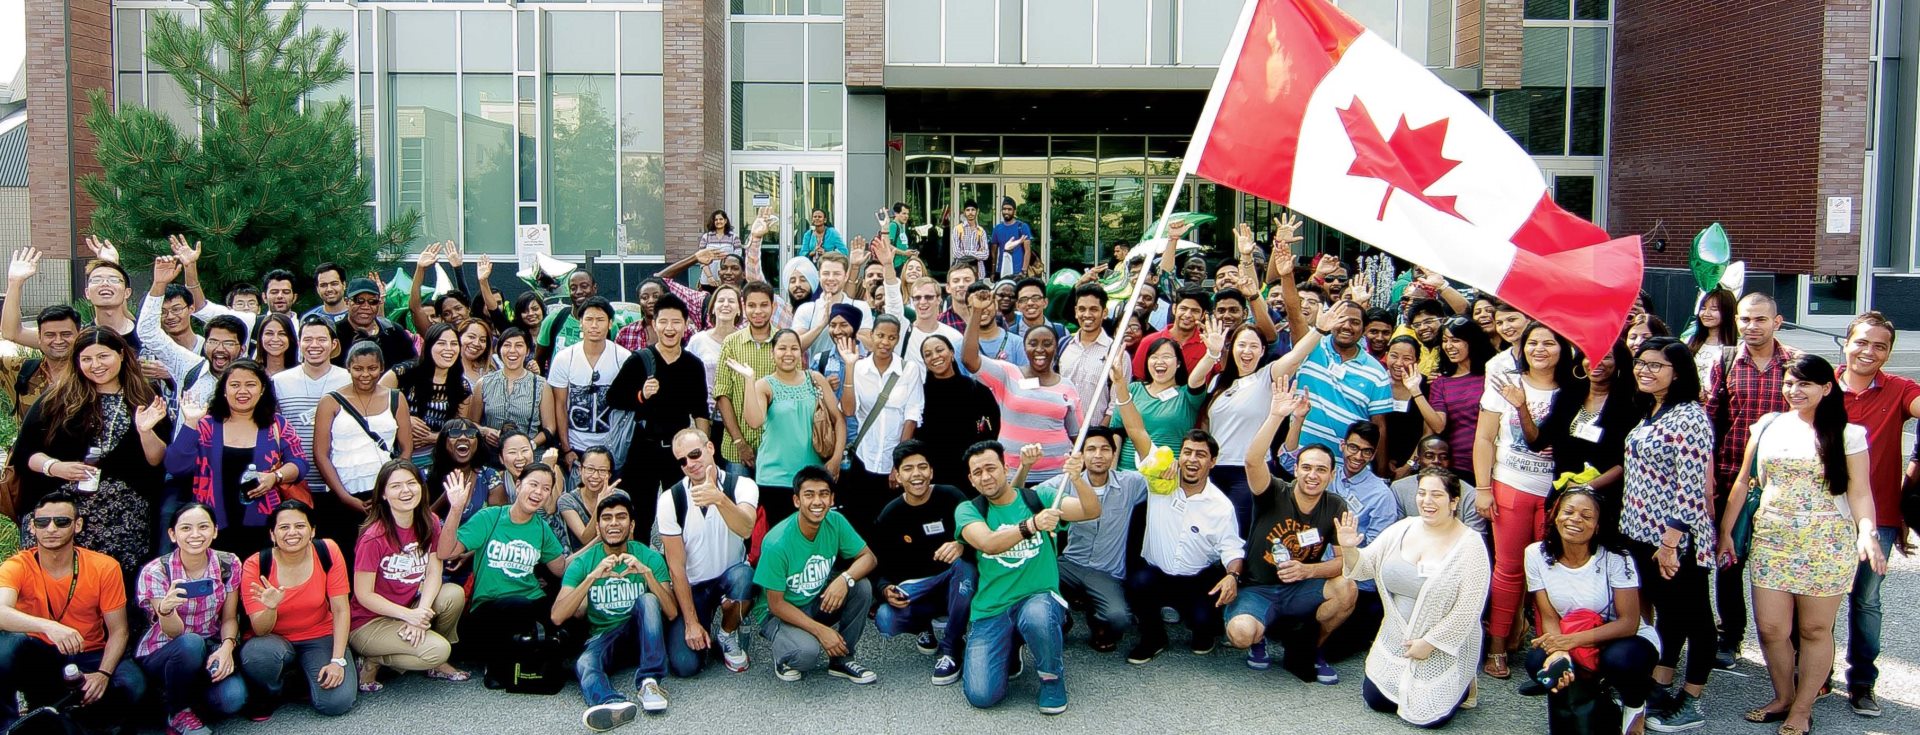 Kanada’da Eğitim Gören Uluslararası Öğrenciler Kanada Vatandaşı Olabiliyor